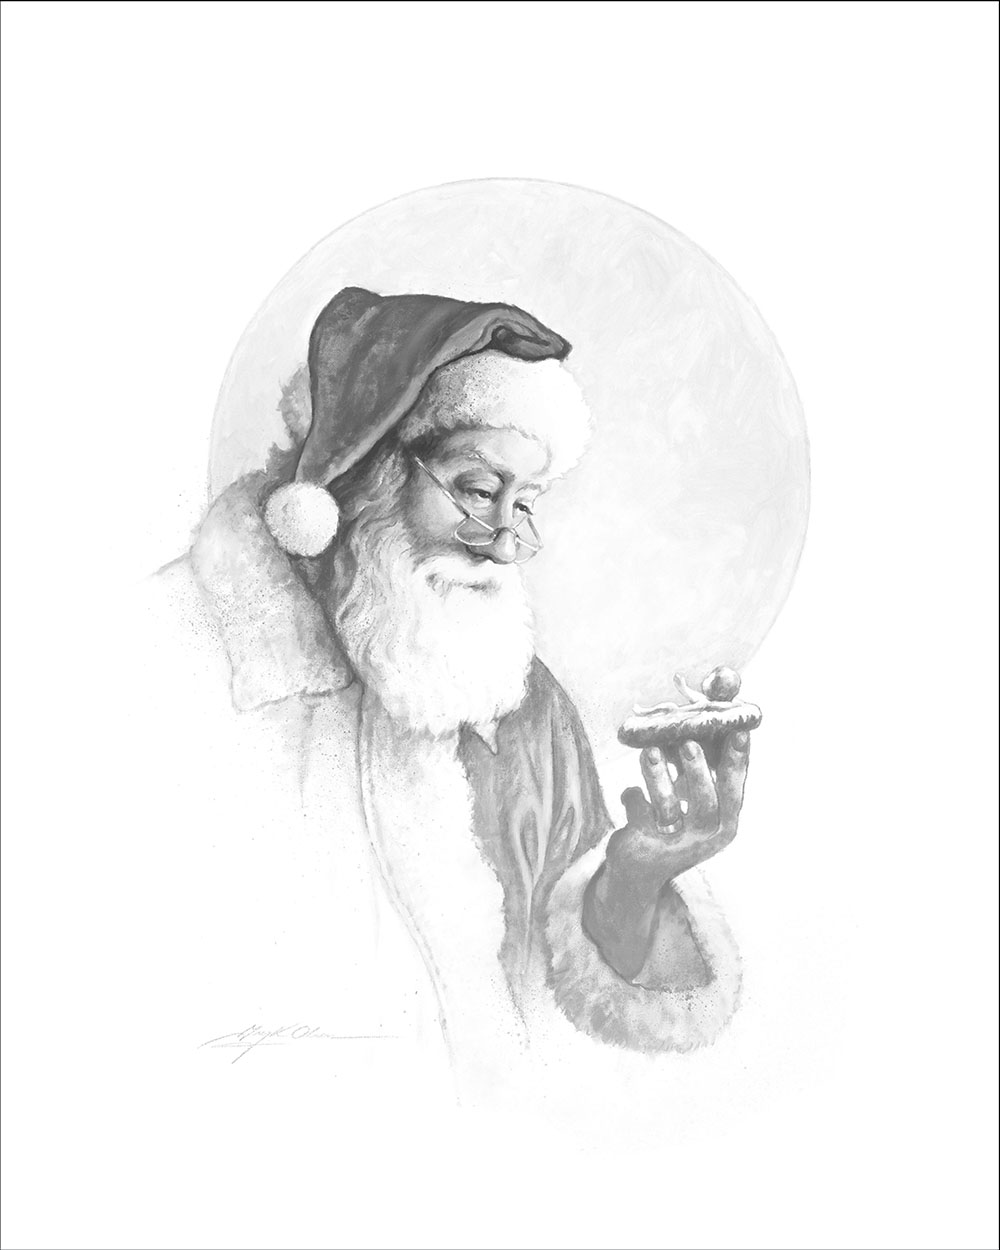 The Spirit of Christmas Vignette: Original by Greg Olsen